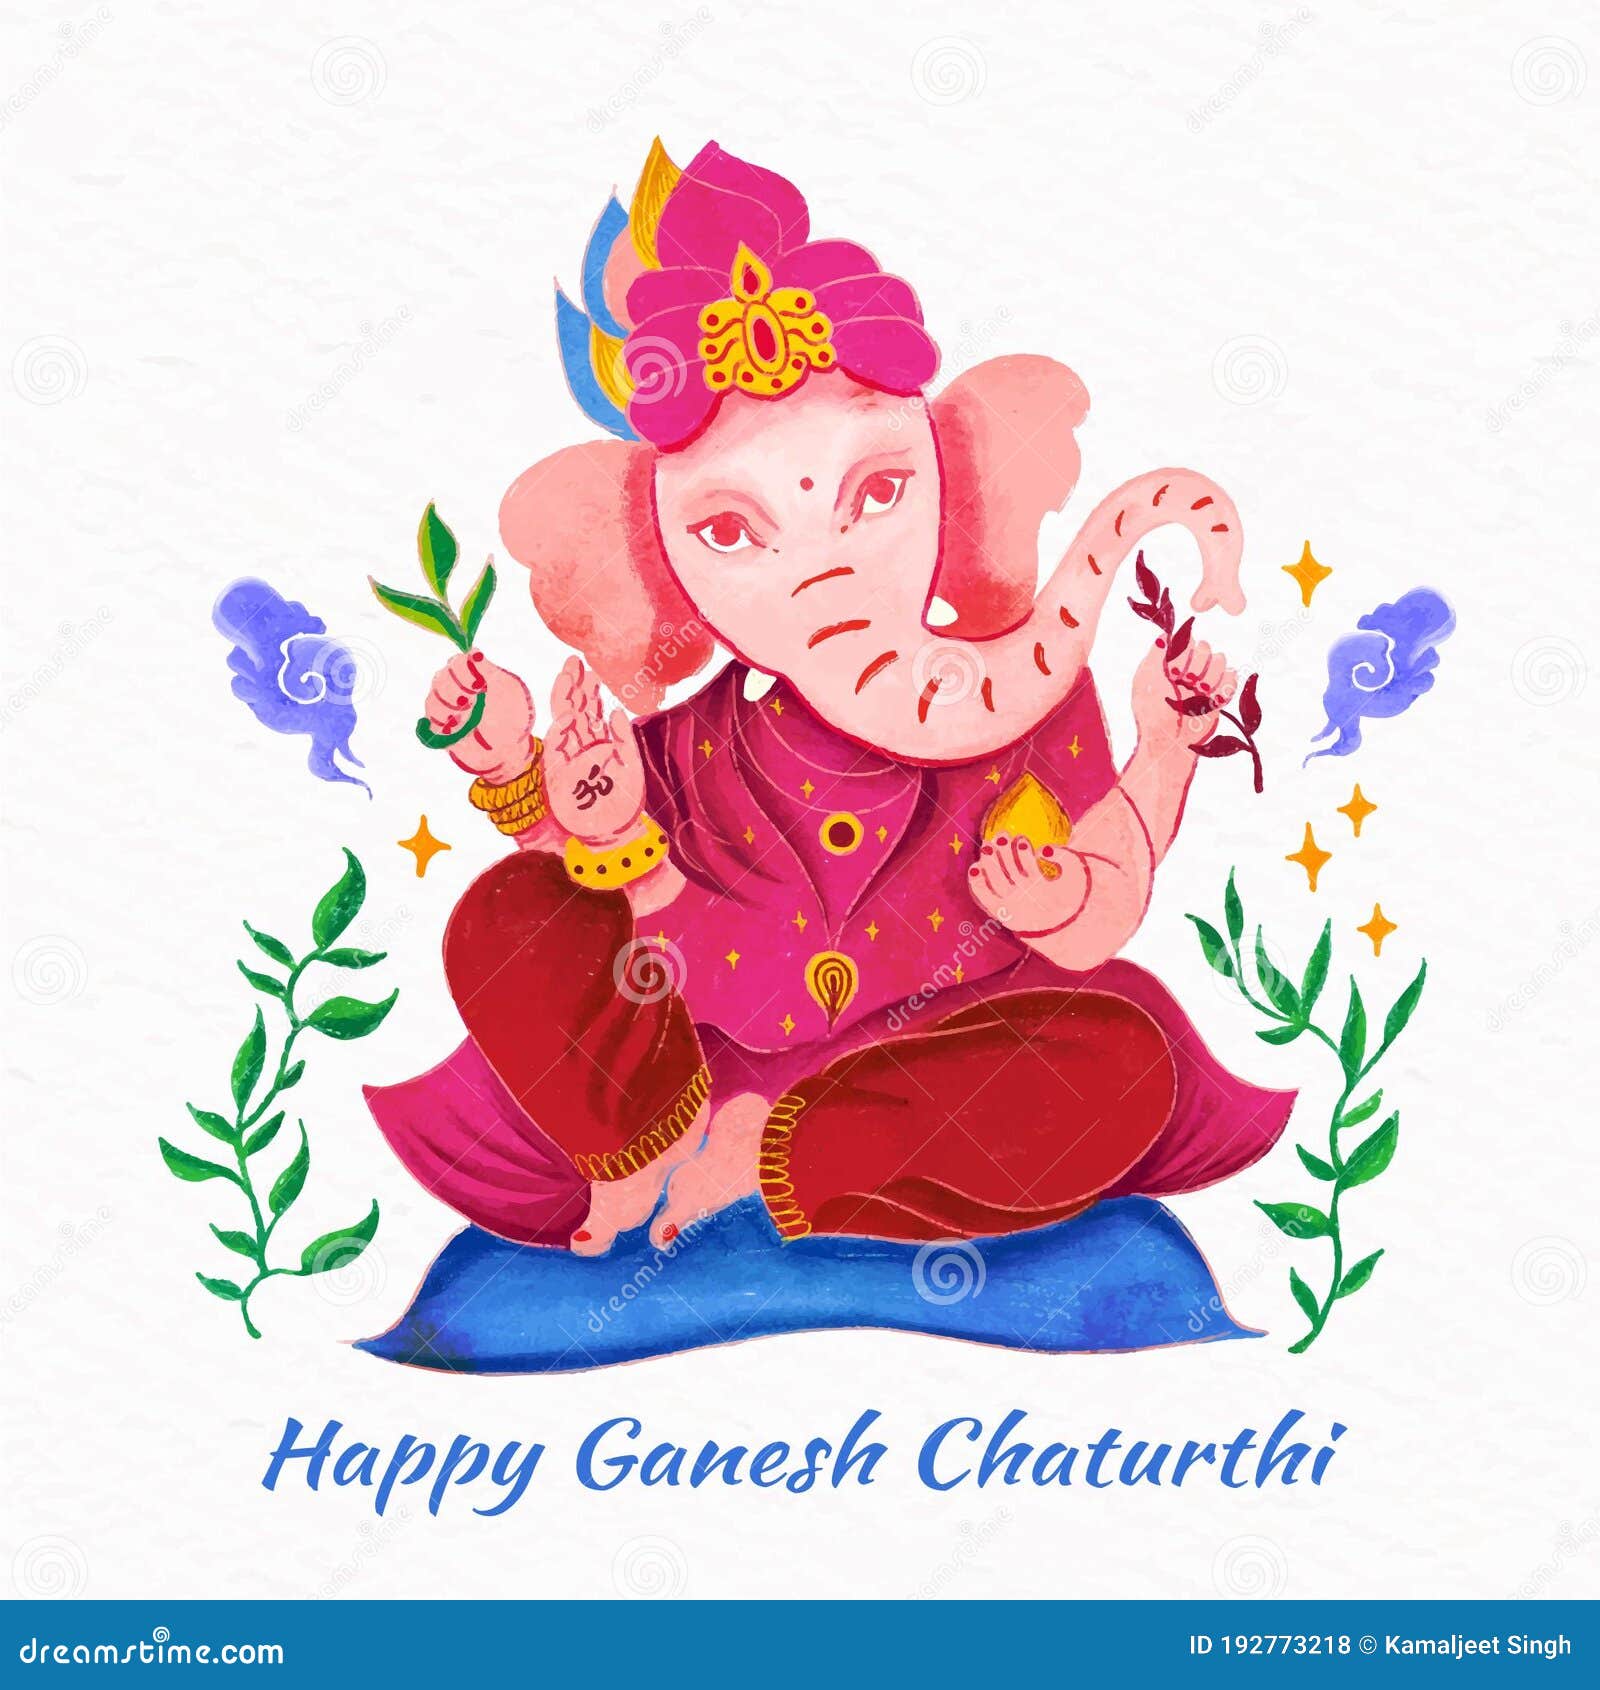 Lord Ganesha cartoon style stock illustration. Illustration of chaturthi -  192773218